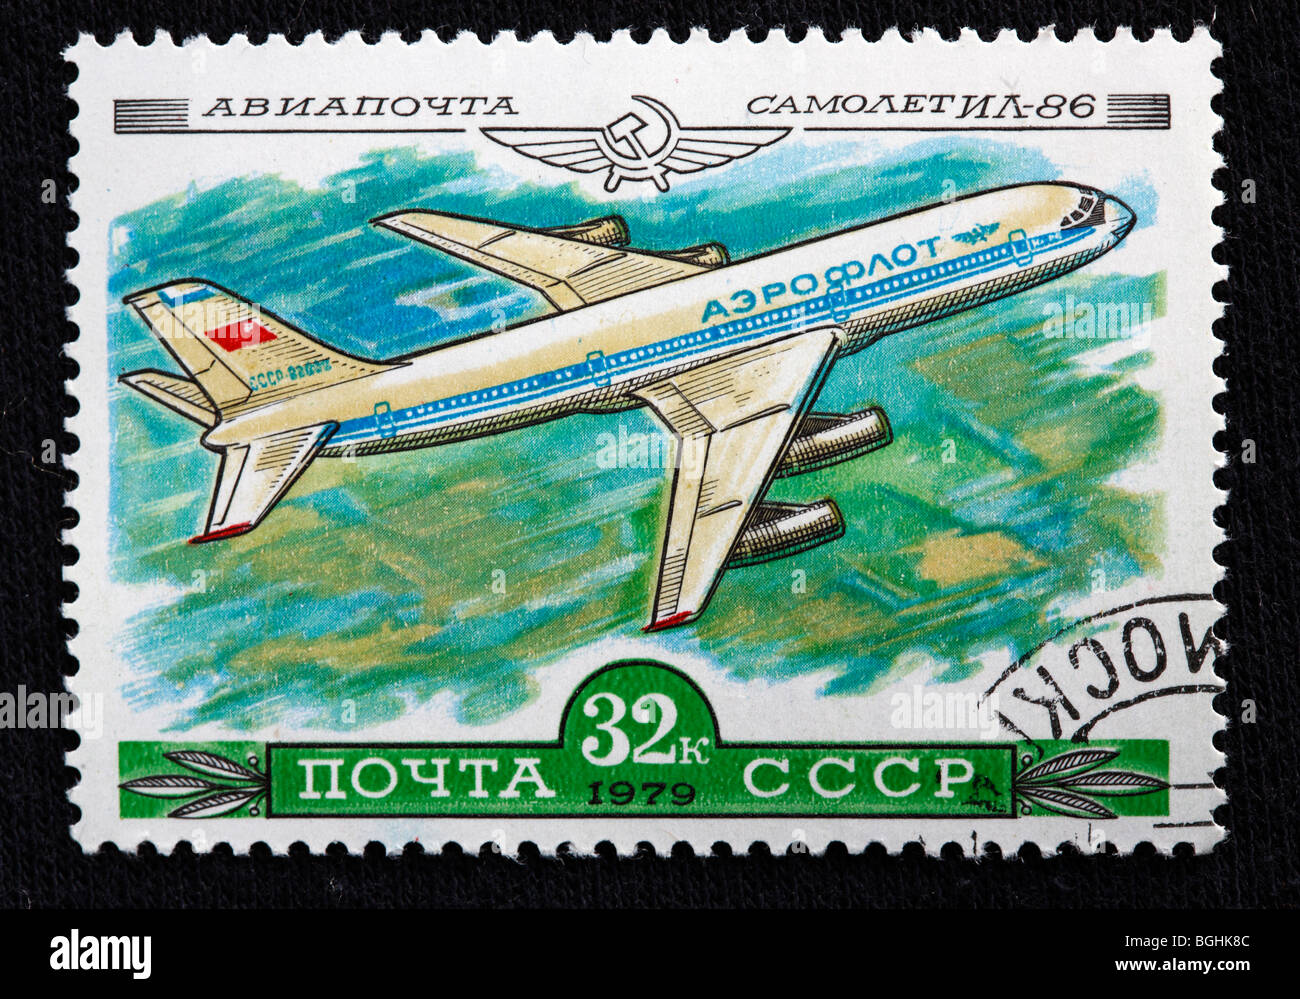 La storia dell'aviazione, piano russo di IL-86, francobollo, URSS, 1979 Foto Stock